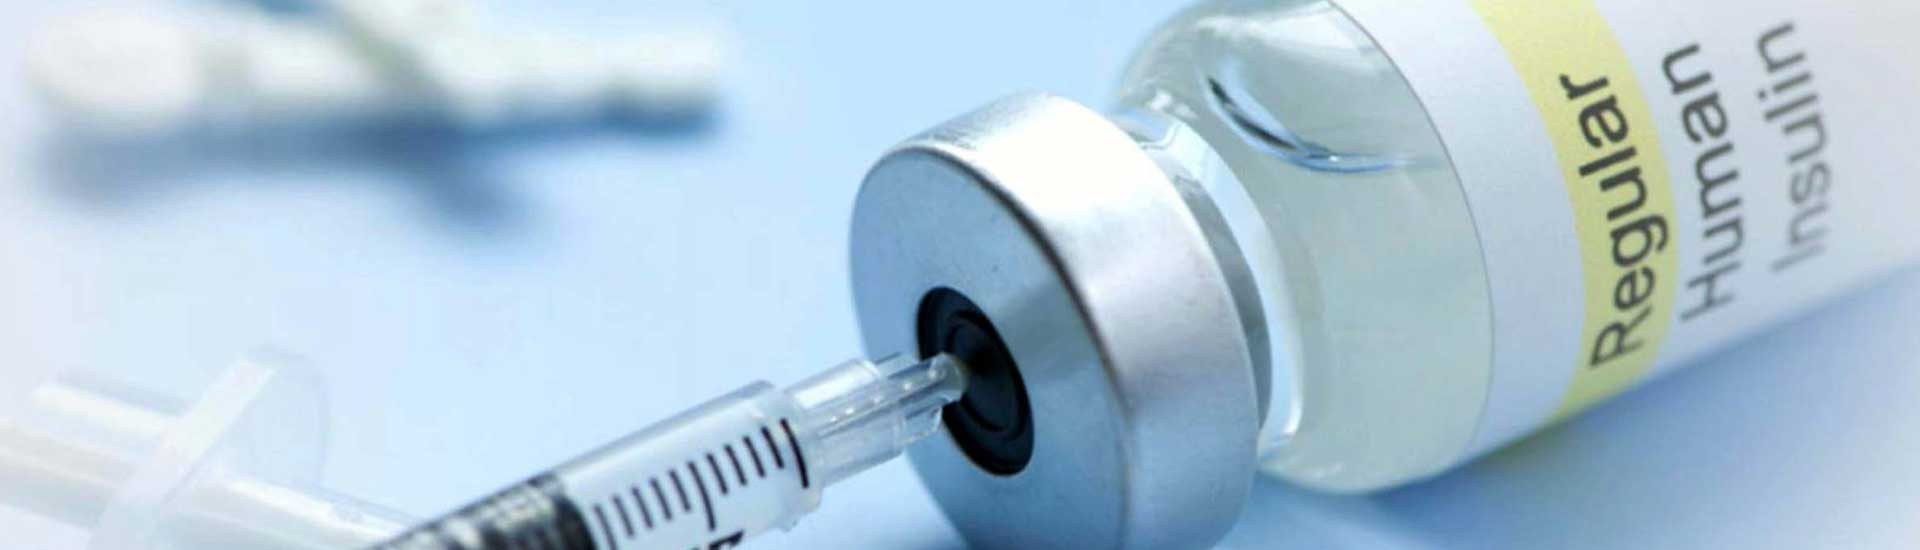 vai faltar insulina no mundo?